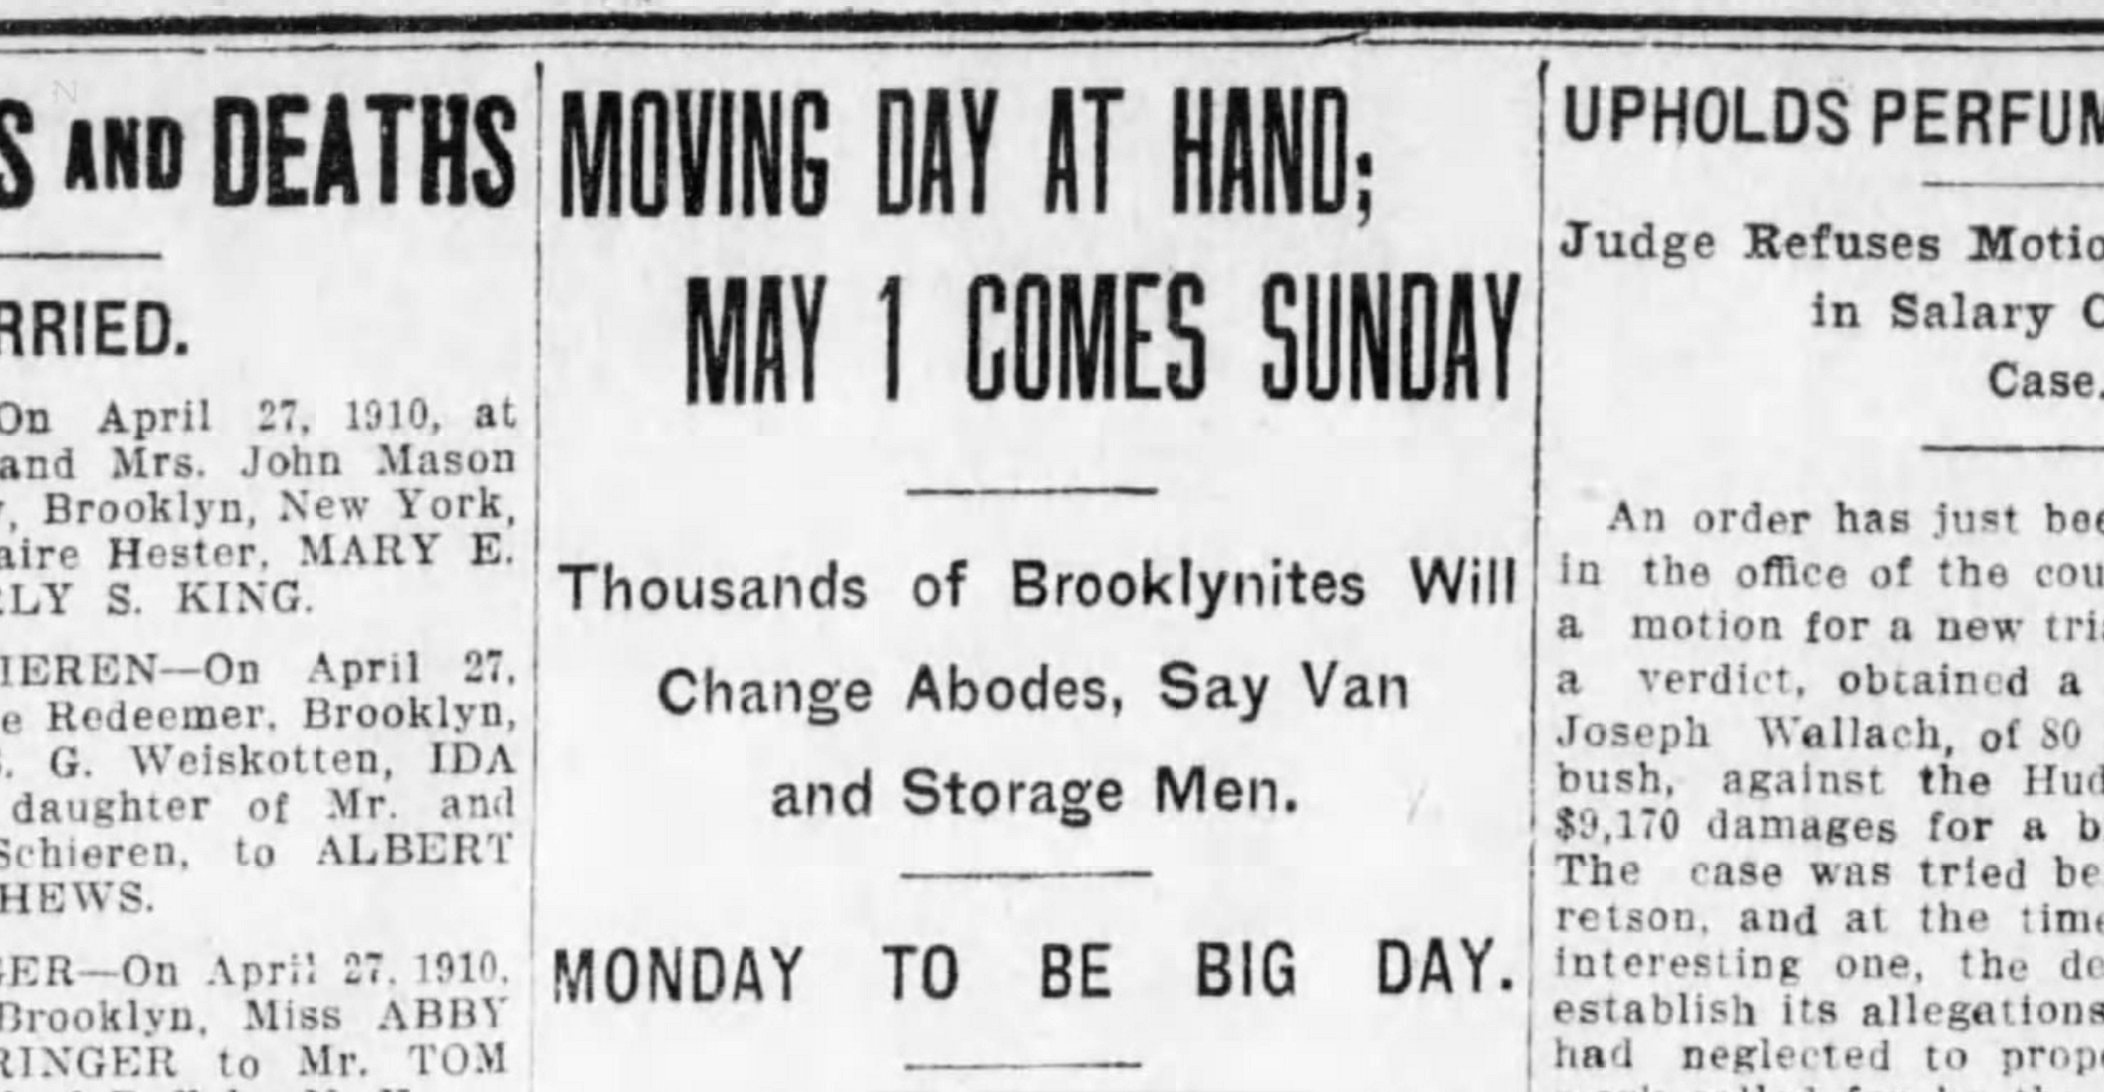 Brooklyn History May 1 Moving Day